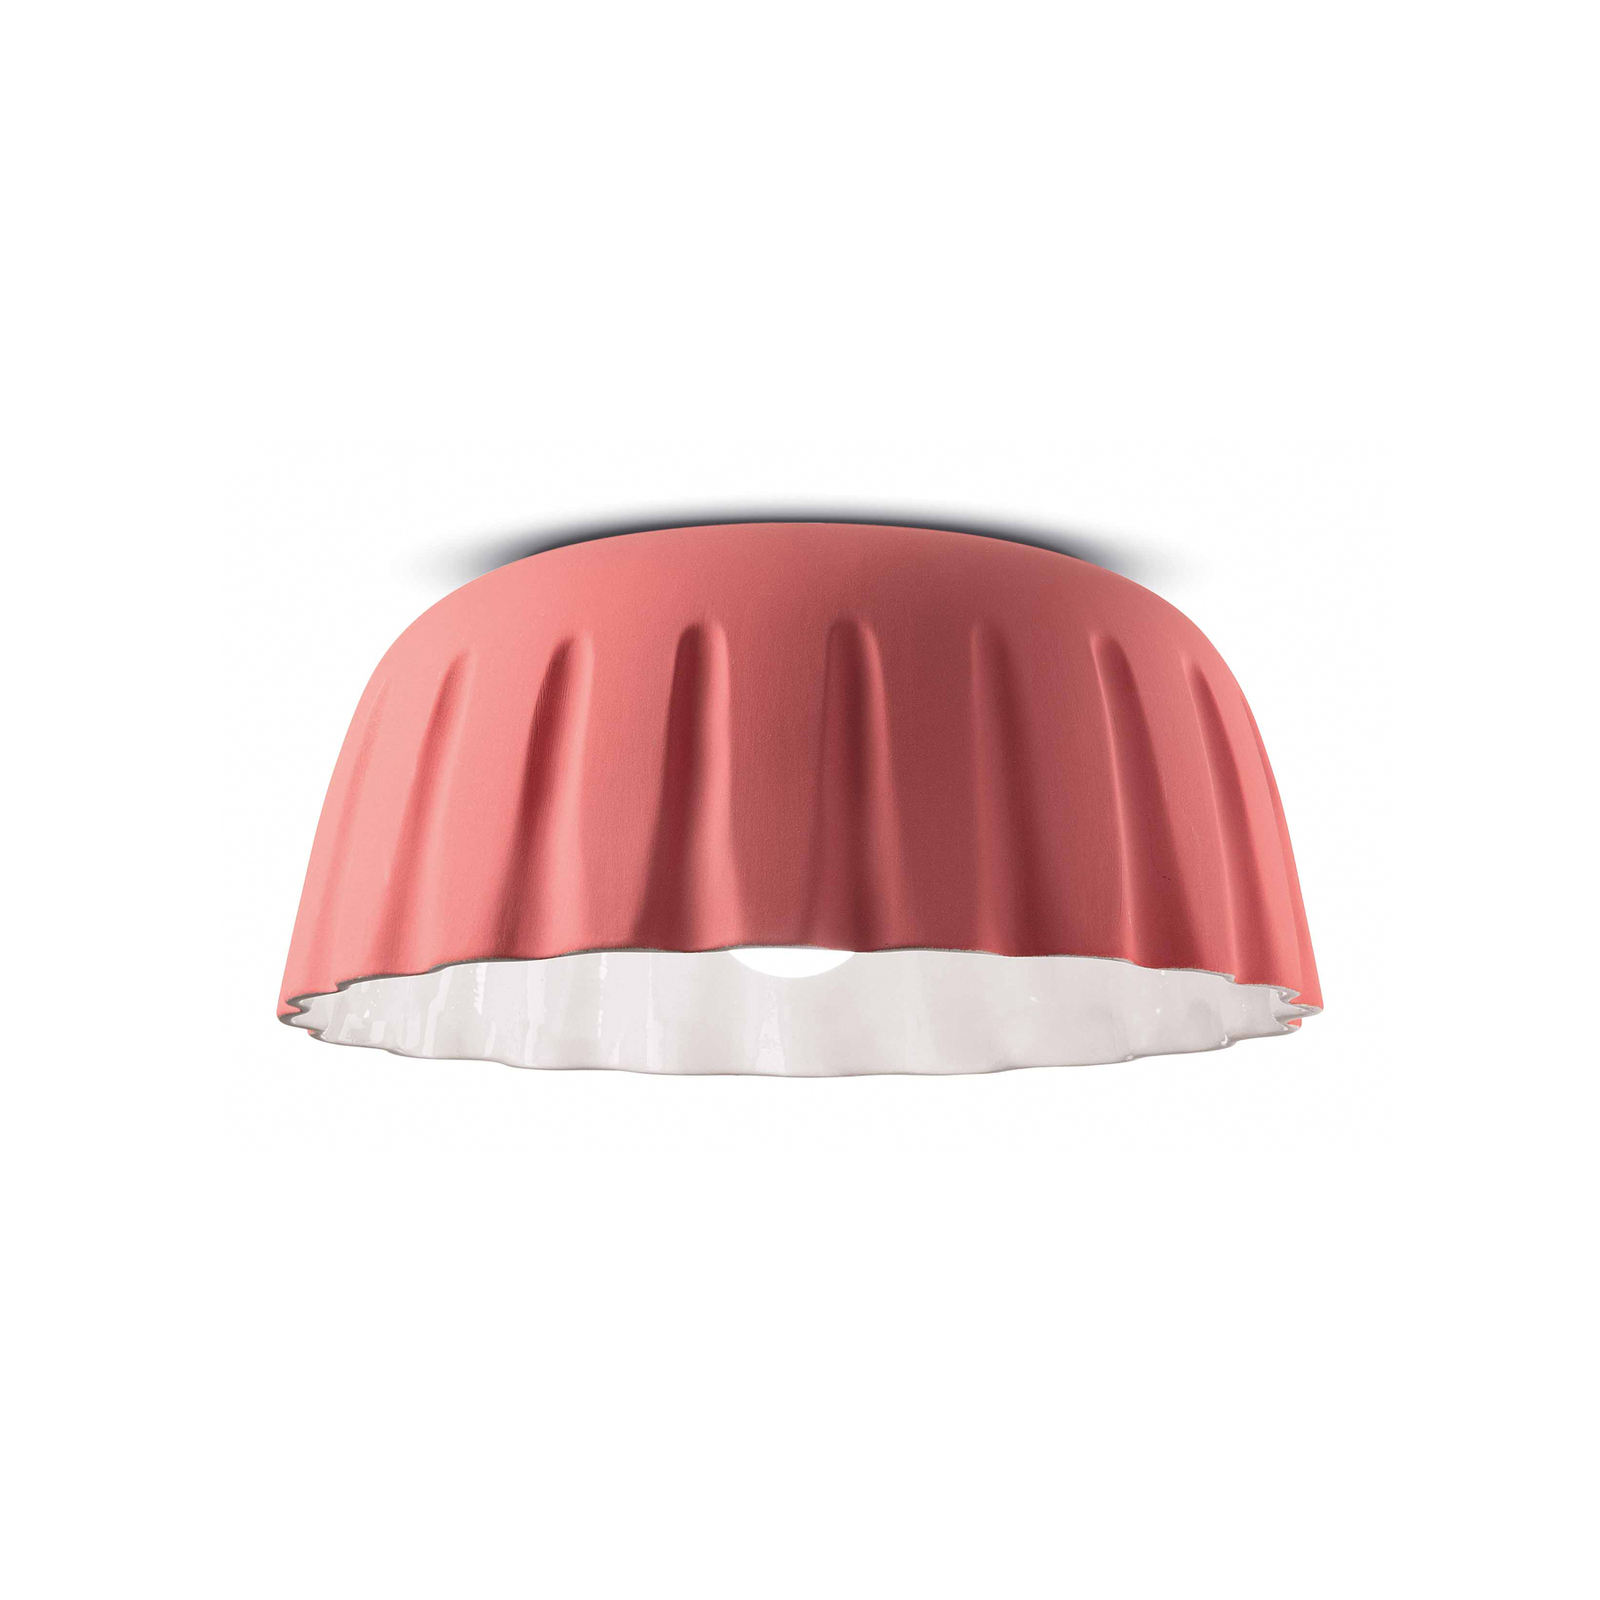 Lampa sufitowa Madame Gres ceramiczna wysokość 17 cm, różowa